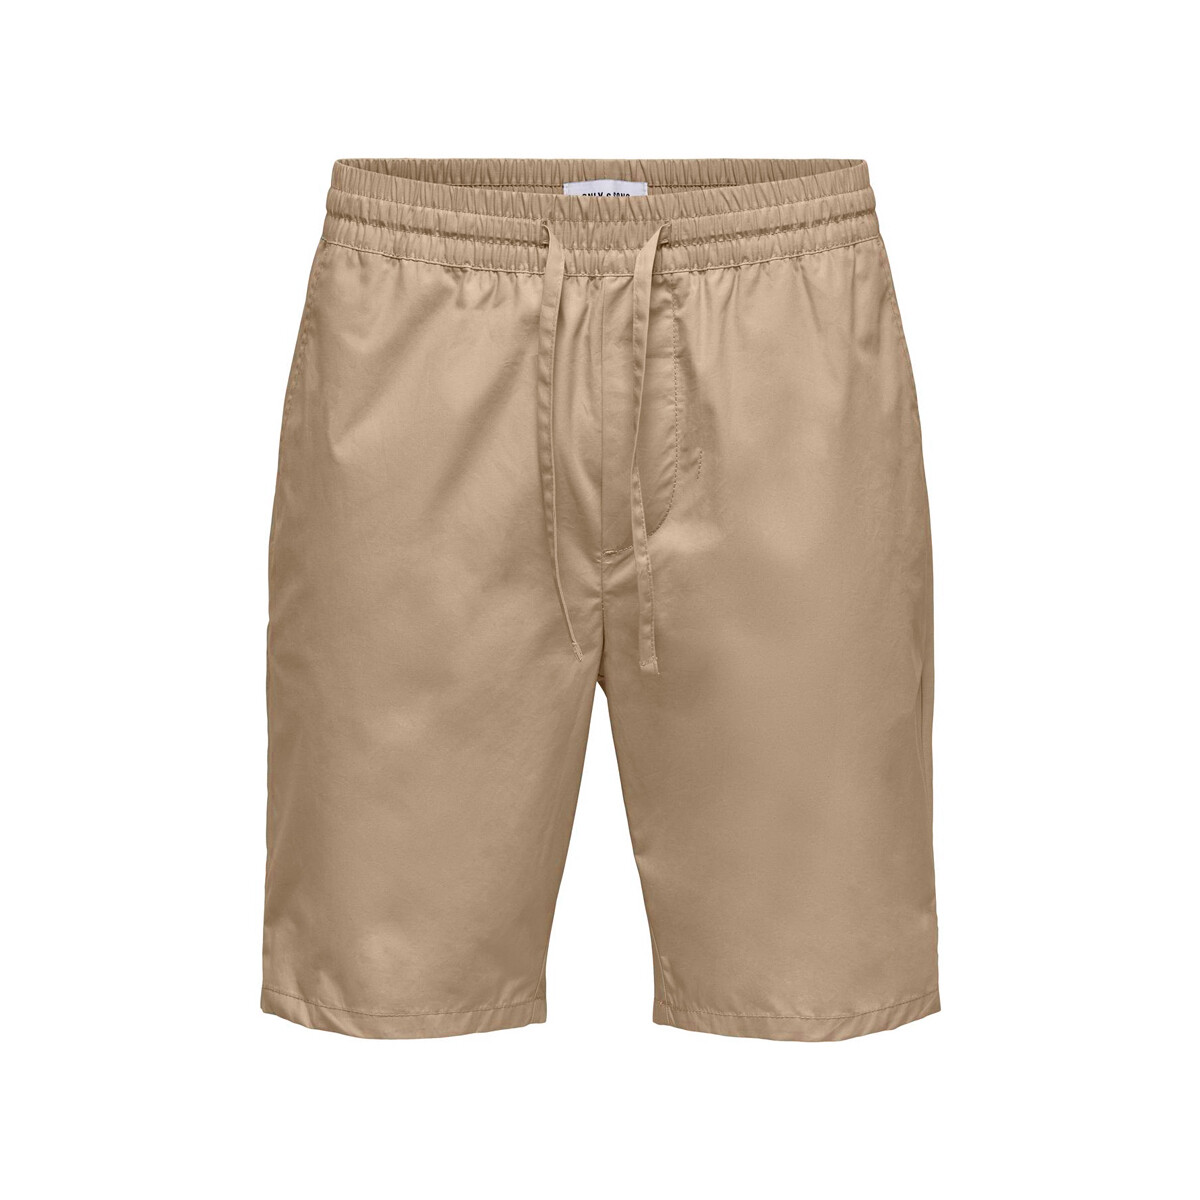 Kleidung Herren Shorts / Bermudas Only & Sons  22028509 Beige